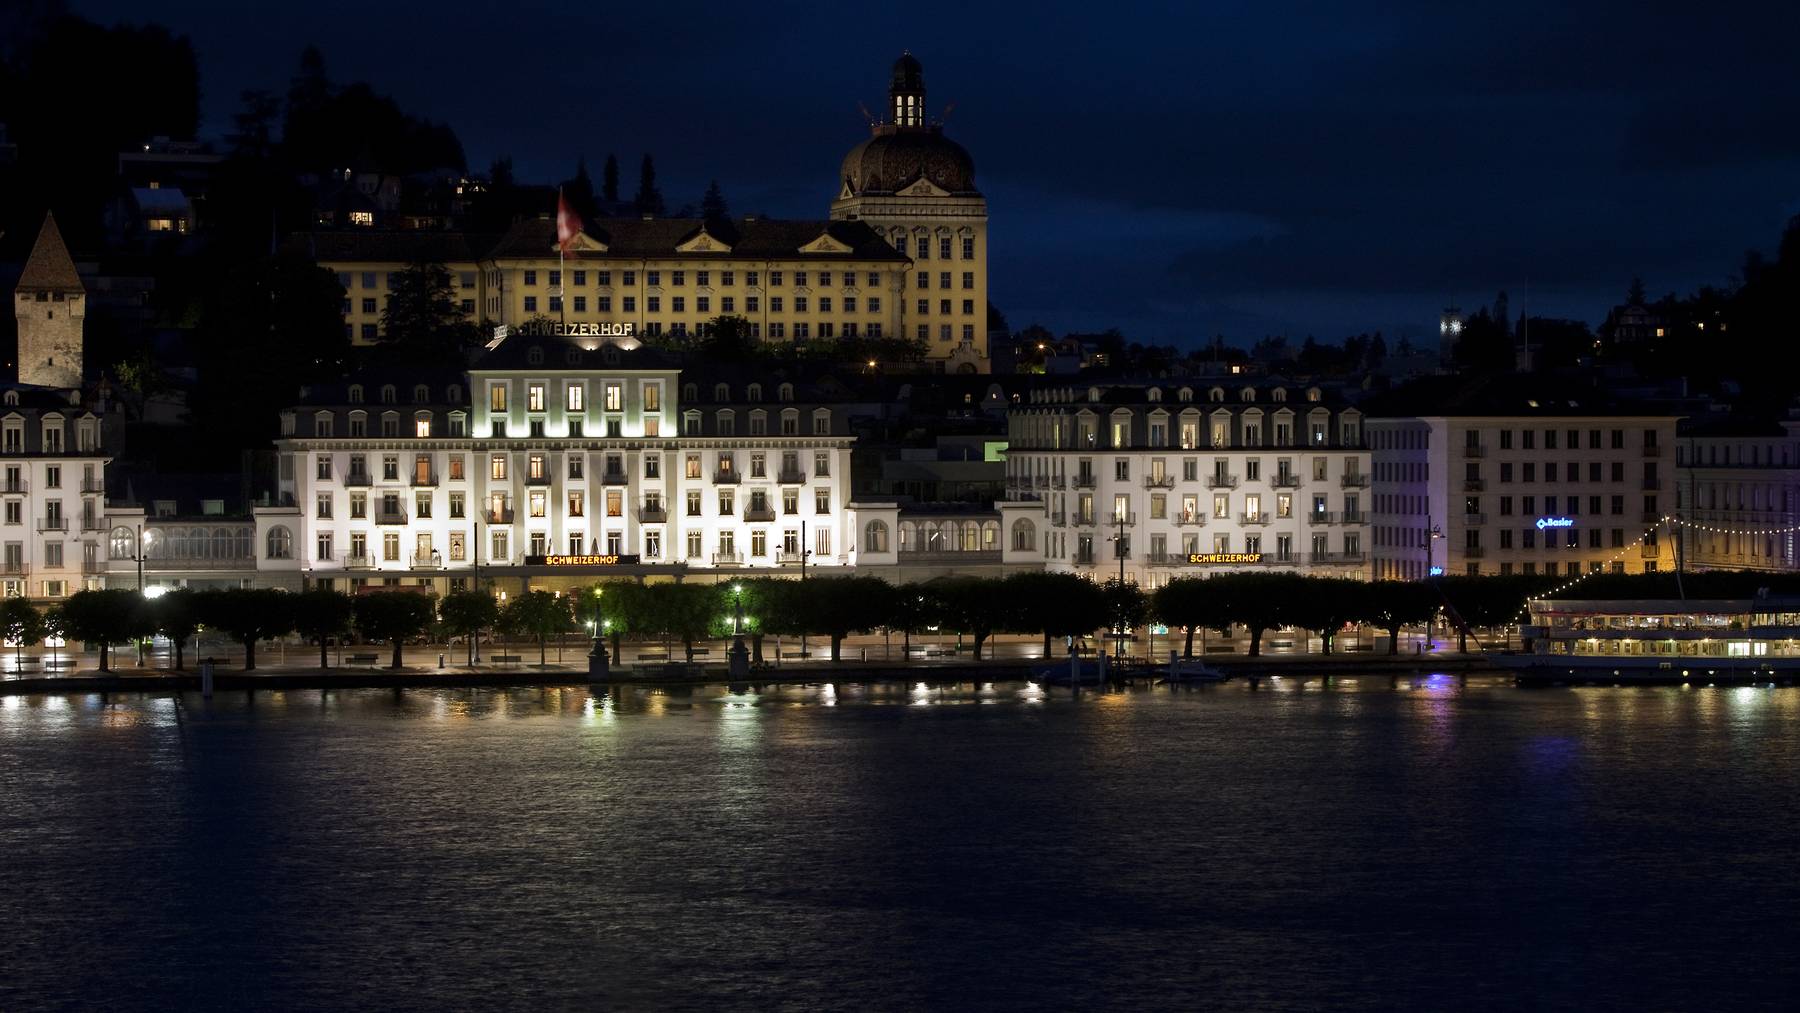 Stadt Luzern will mit LED-Lampen Strom sparen